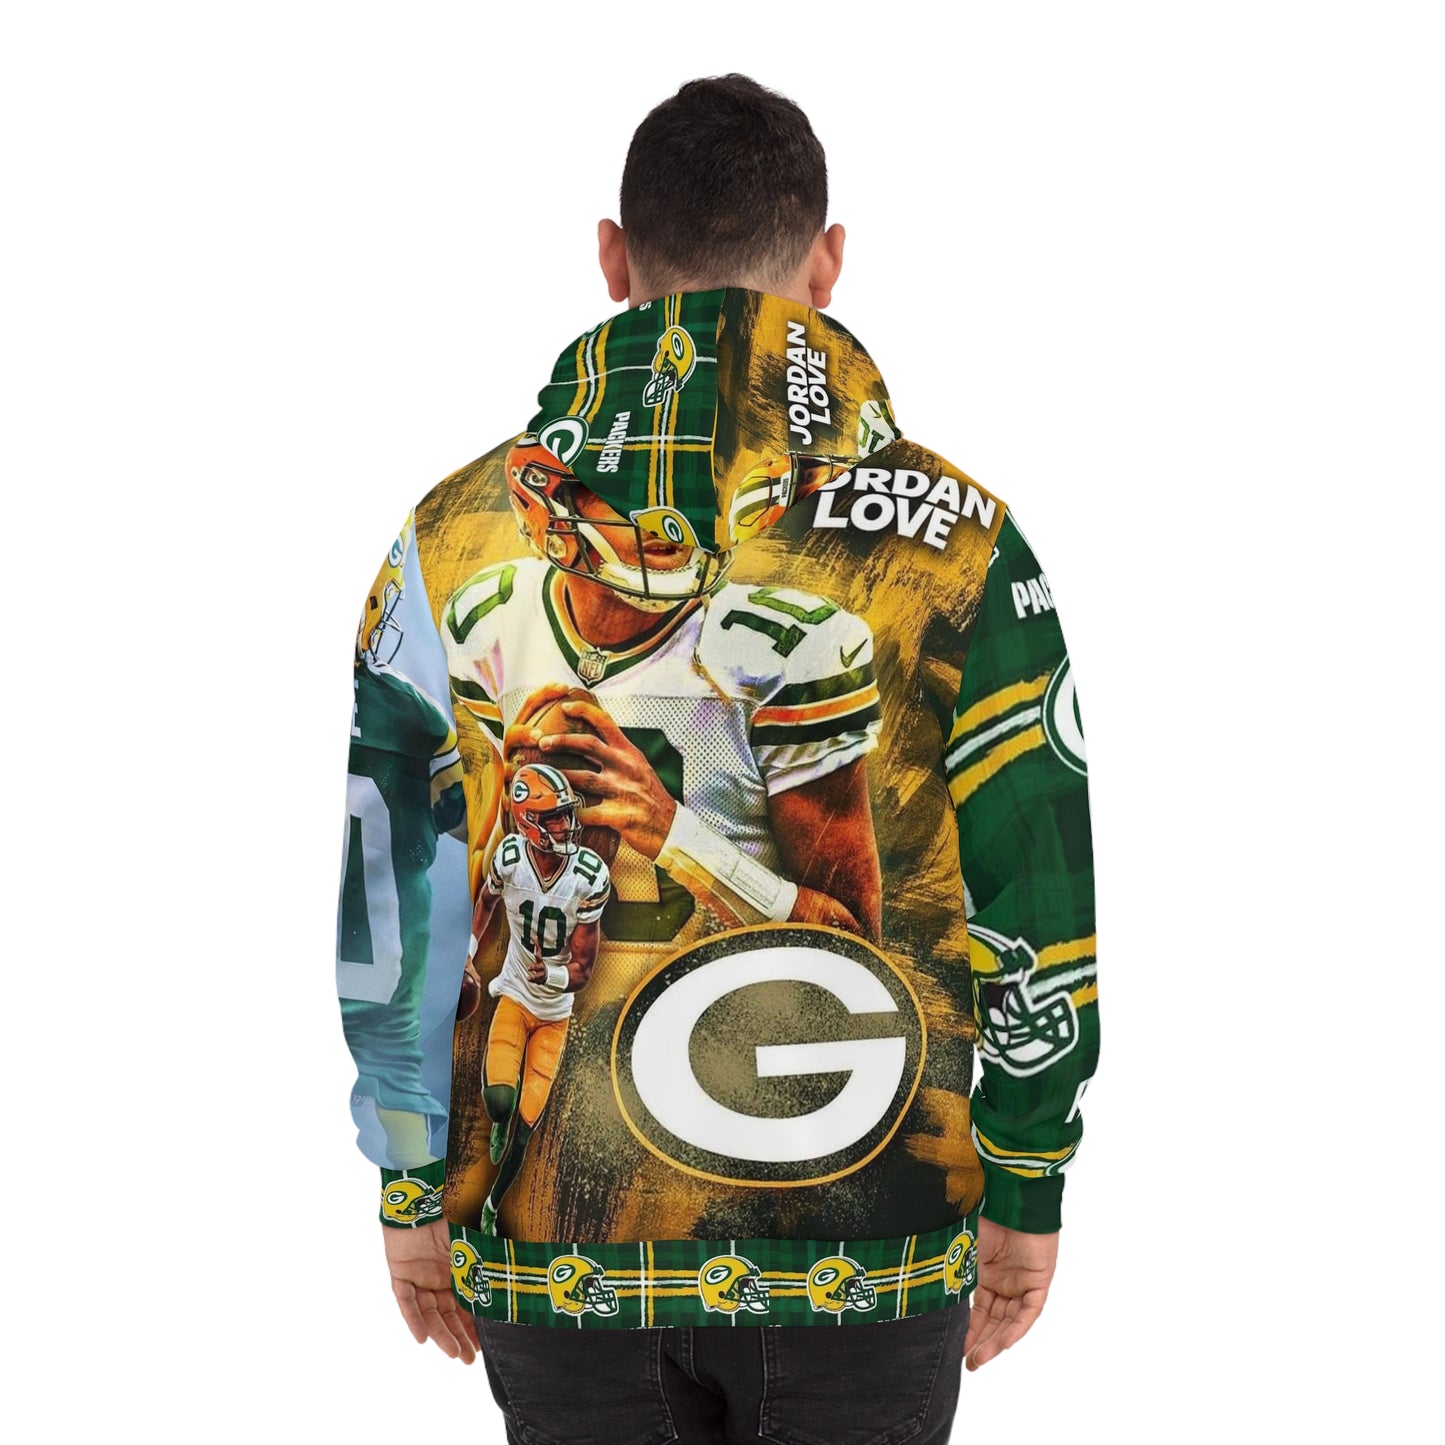 GameTime 🏈 Jordan Love  “Green Bay Packers” Fans Hoodie